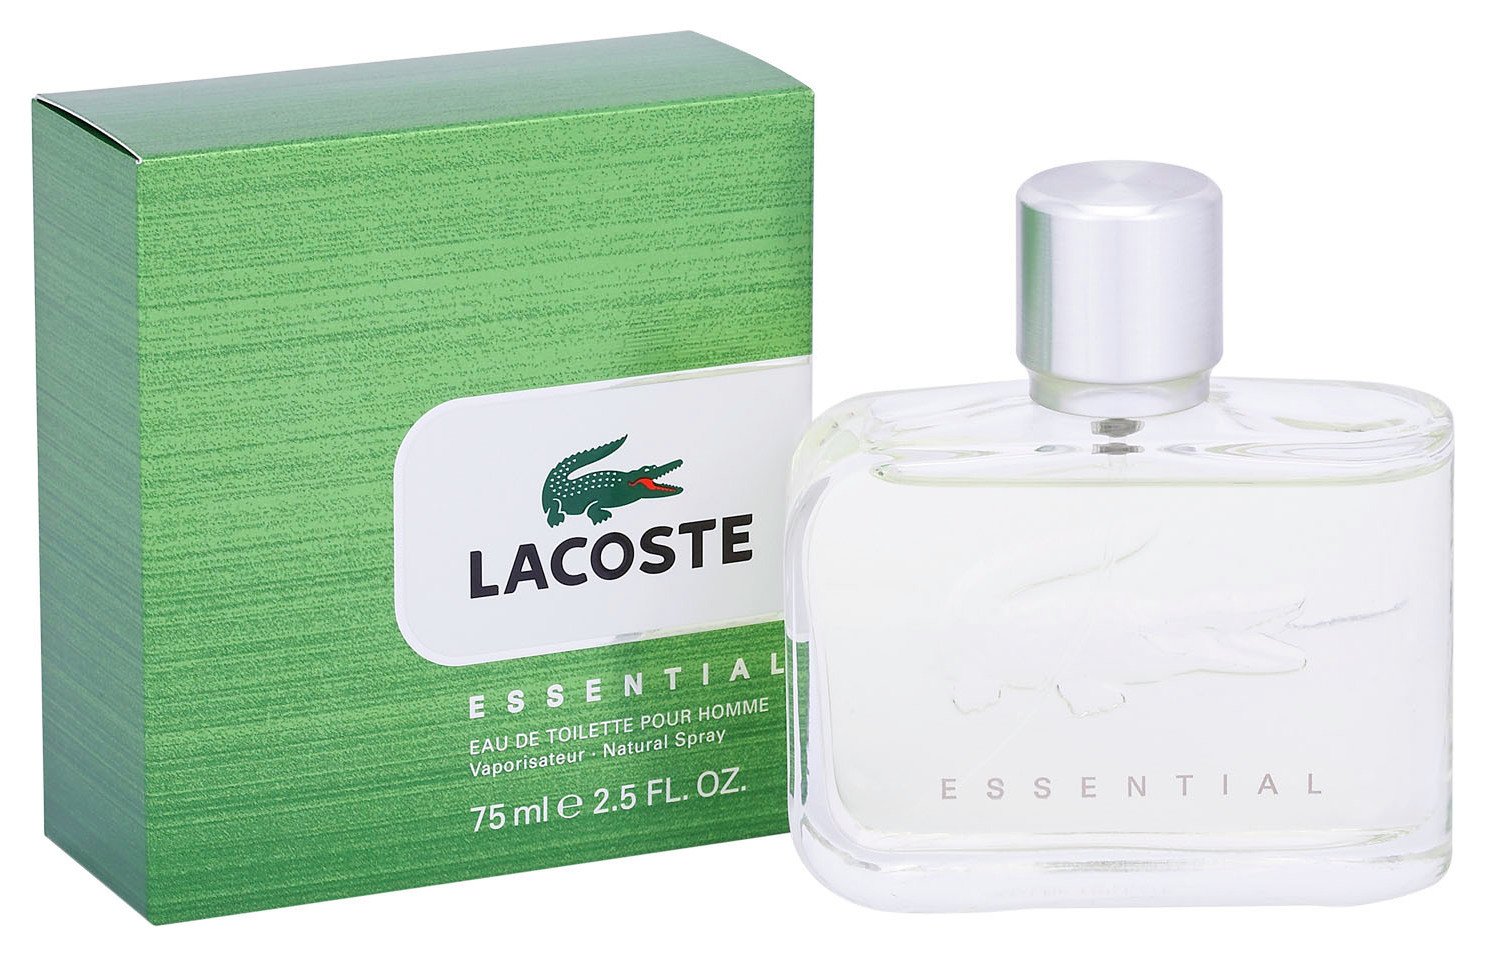 Lacoste Essential Eau de Toilette for Men - 75ml